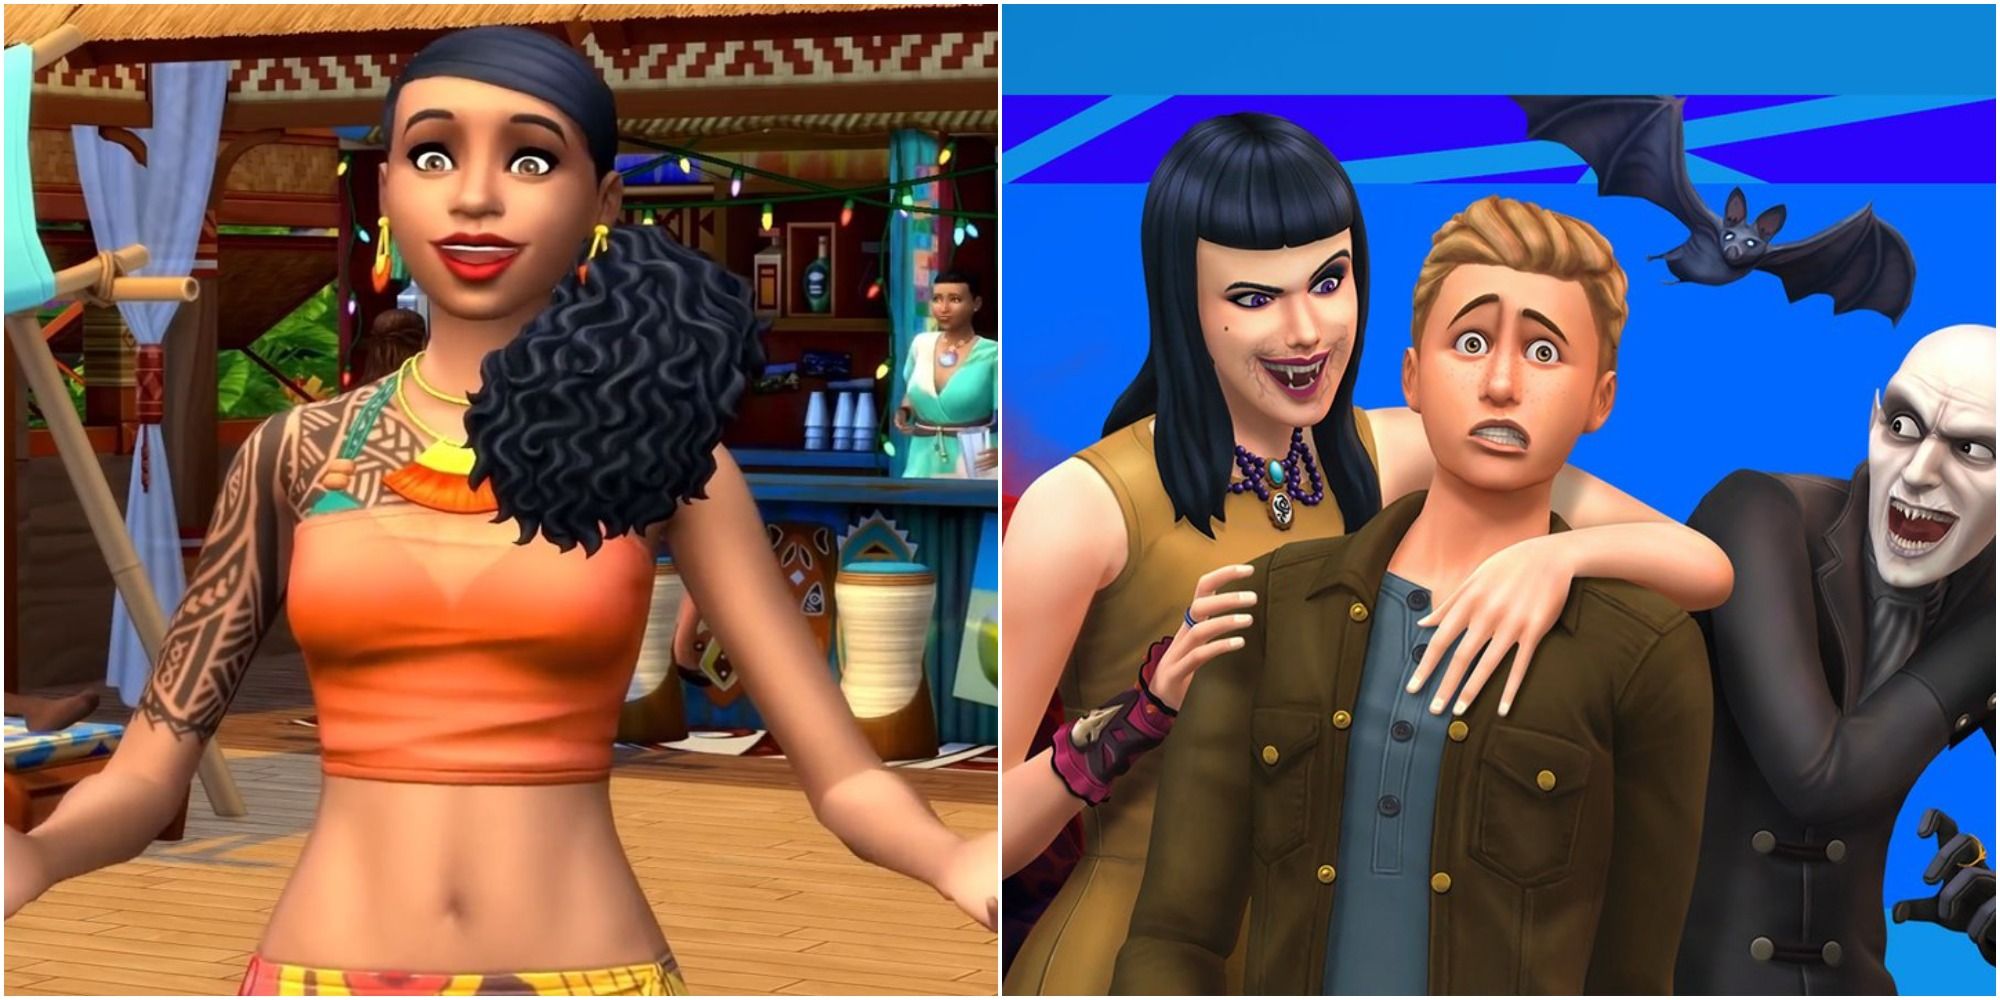 The Sims 4 Island Vampire Split Image Happy Islander Worried Sim Being Held By Vampire